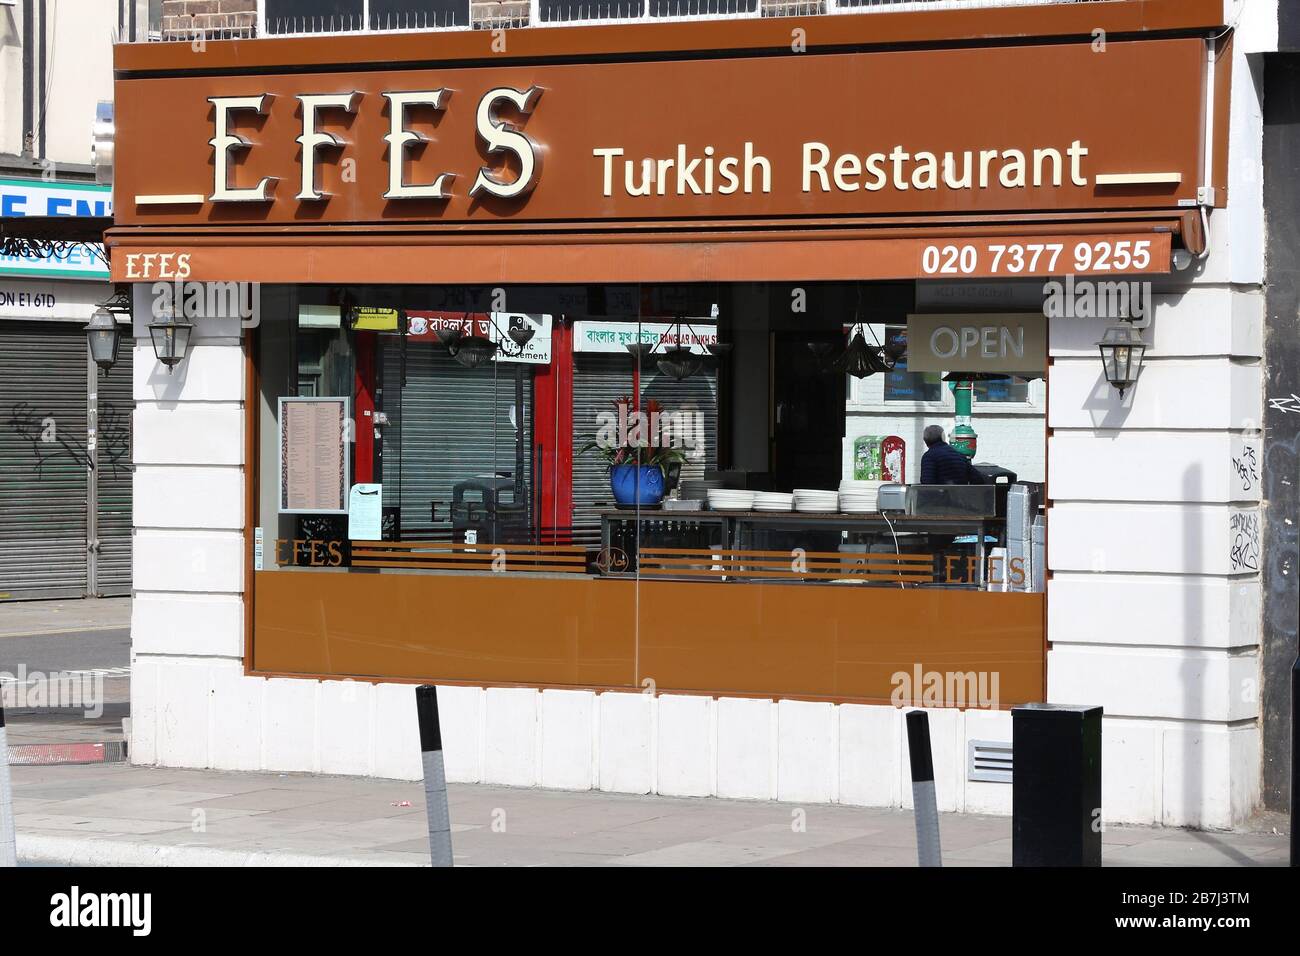 LONDON, Großbritannien - 6. JULI 2016: Türkisches Restaurant Efes in London. Laut TripAdvisor gibt es in London mindestens 20.700 Restaurants. Stockfoto